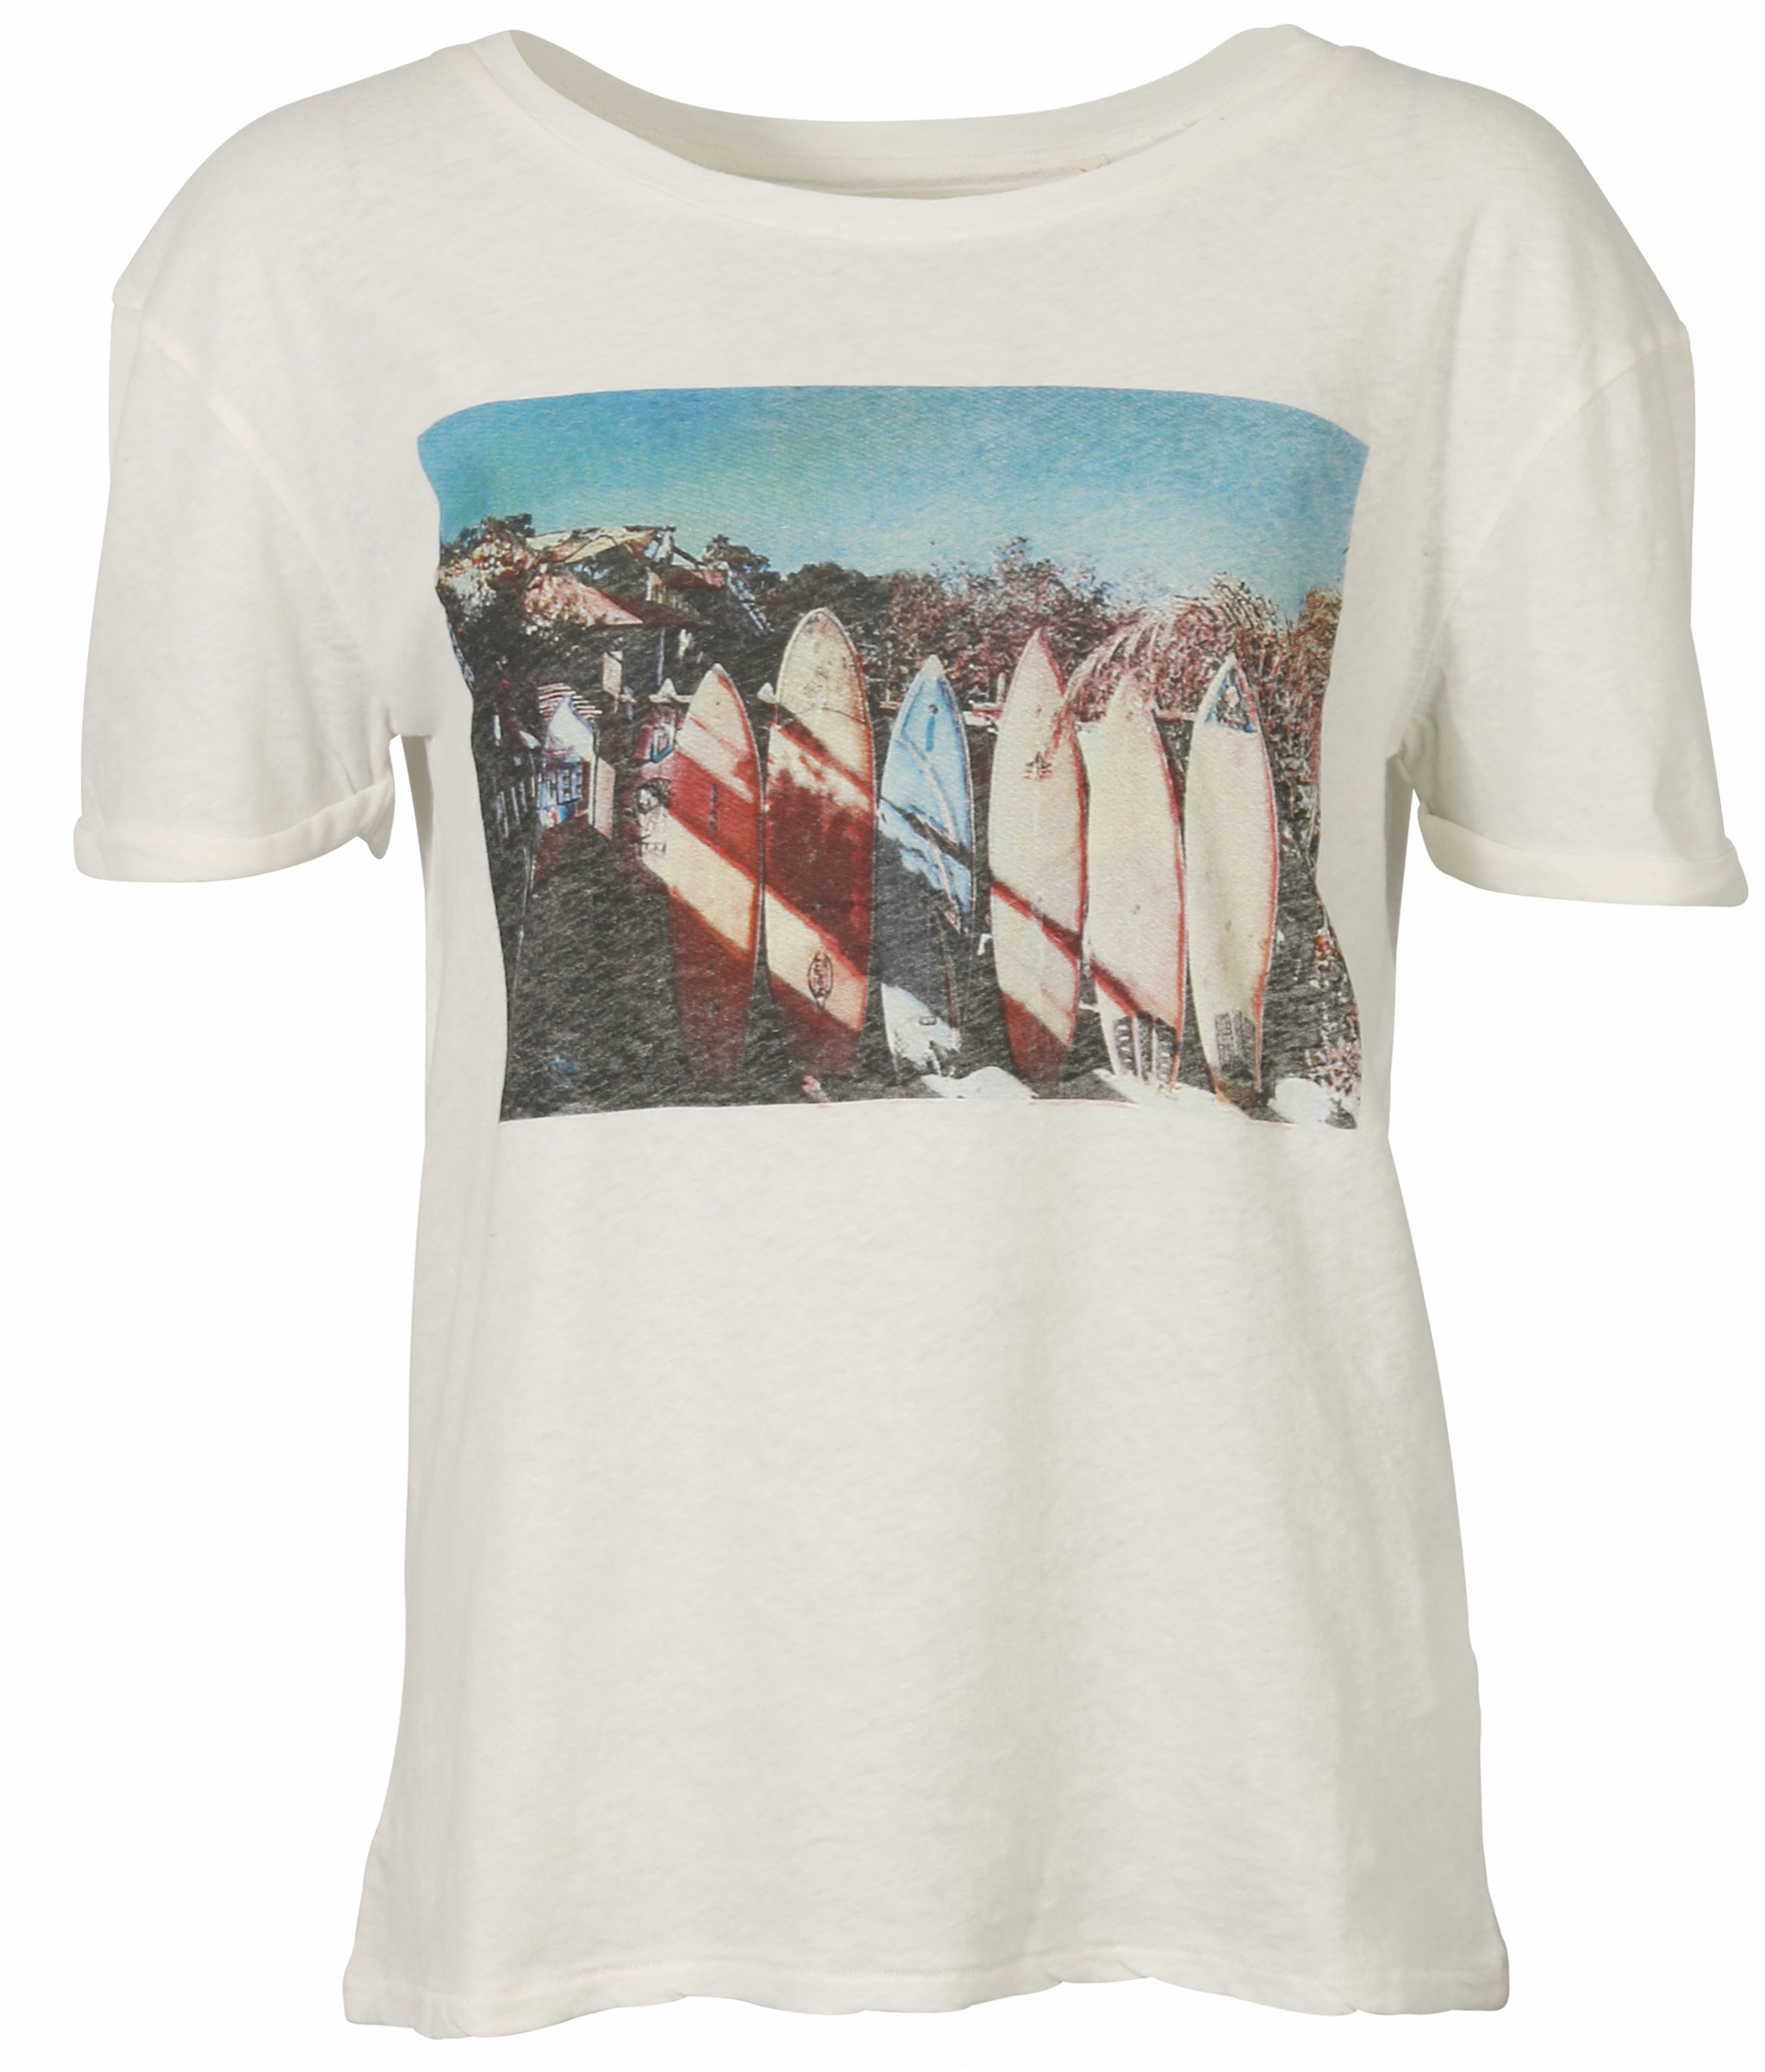 June7.2 T-Shirt Arizona Offwhite Printed